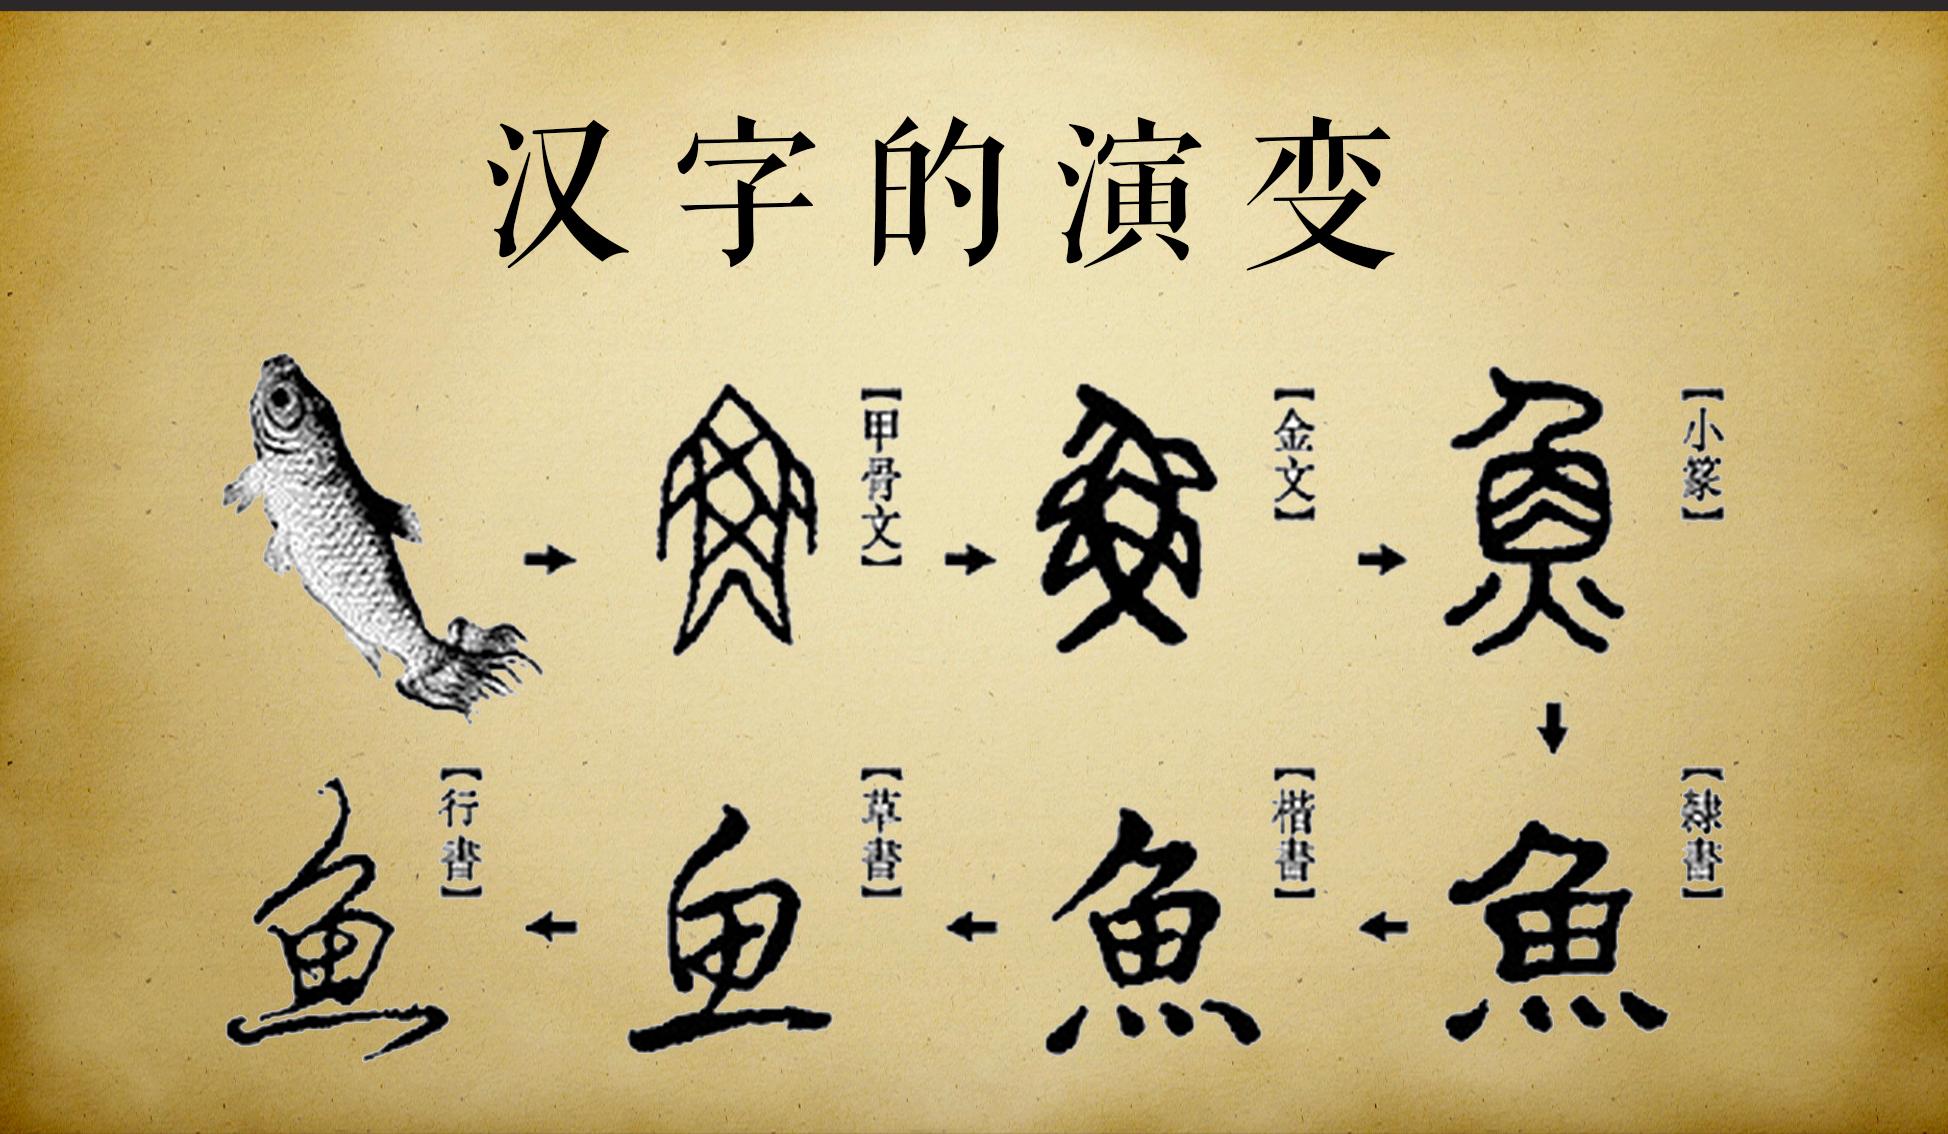 中国汉字的起源和演变过程 (中国汉字的起源 探究中国汉字的源起与发展)